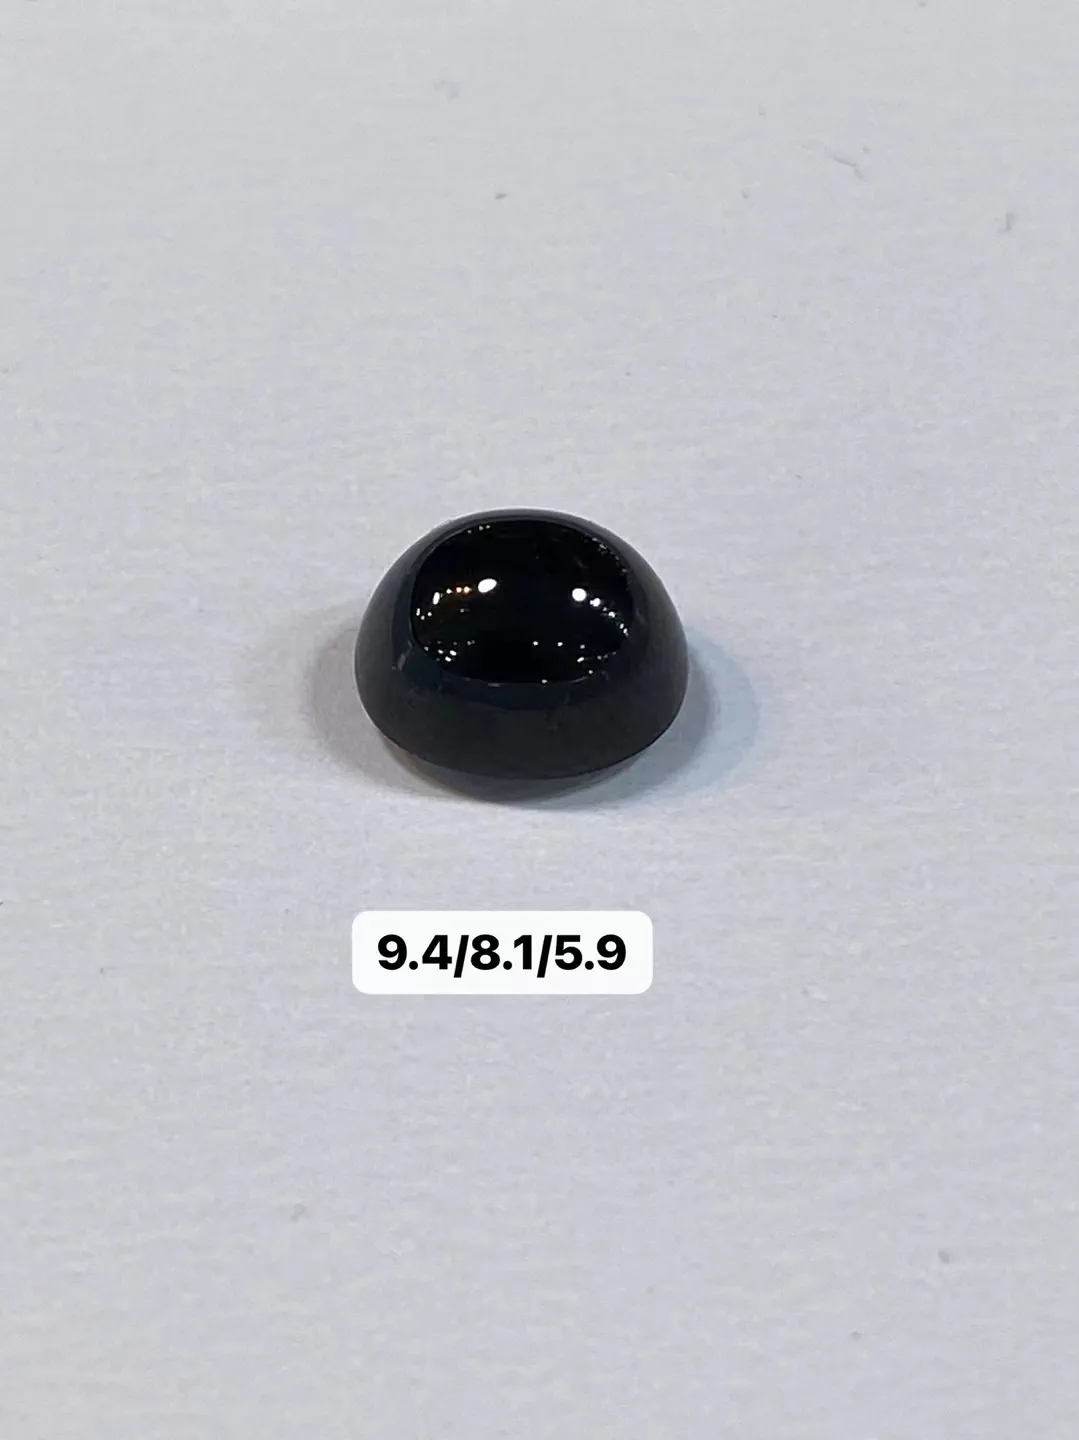 【墨翠蛋面】
尺寸9.4/8.1/5.9毫米黑度黑 灯打通透  品相饱满大气